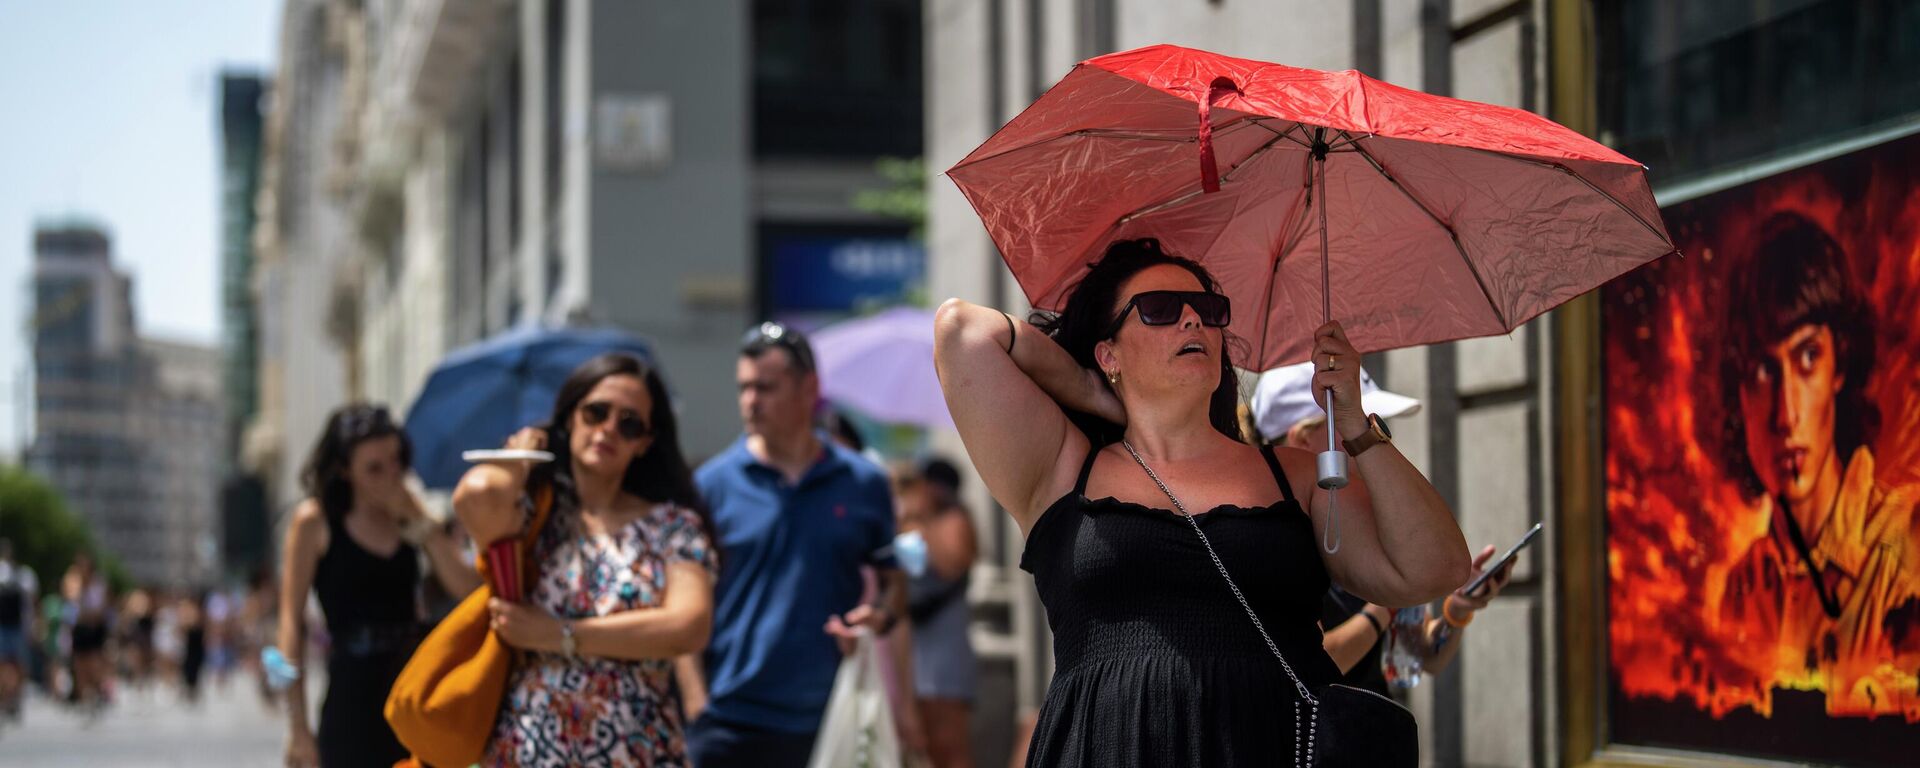 امرأة تحمل مظلة للاحتماء من أشعة الشمس خلال يوم مشمس حار في مدريد، إسبانيا، 18 يوليو 2022. - سبوتنيك عربي, 1920, 29.07.2022